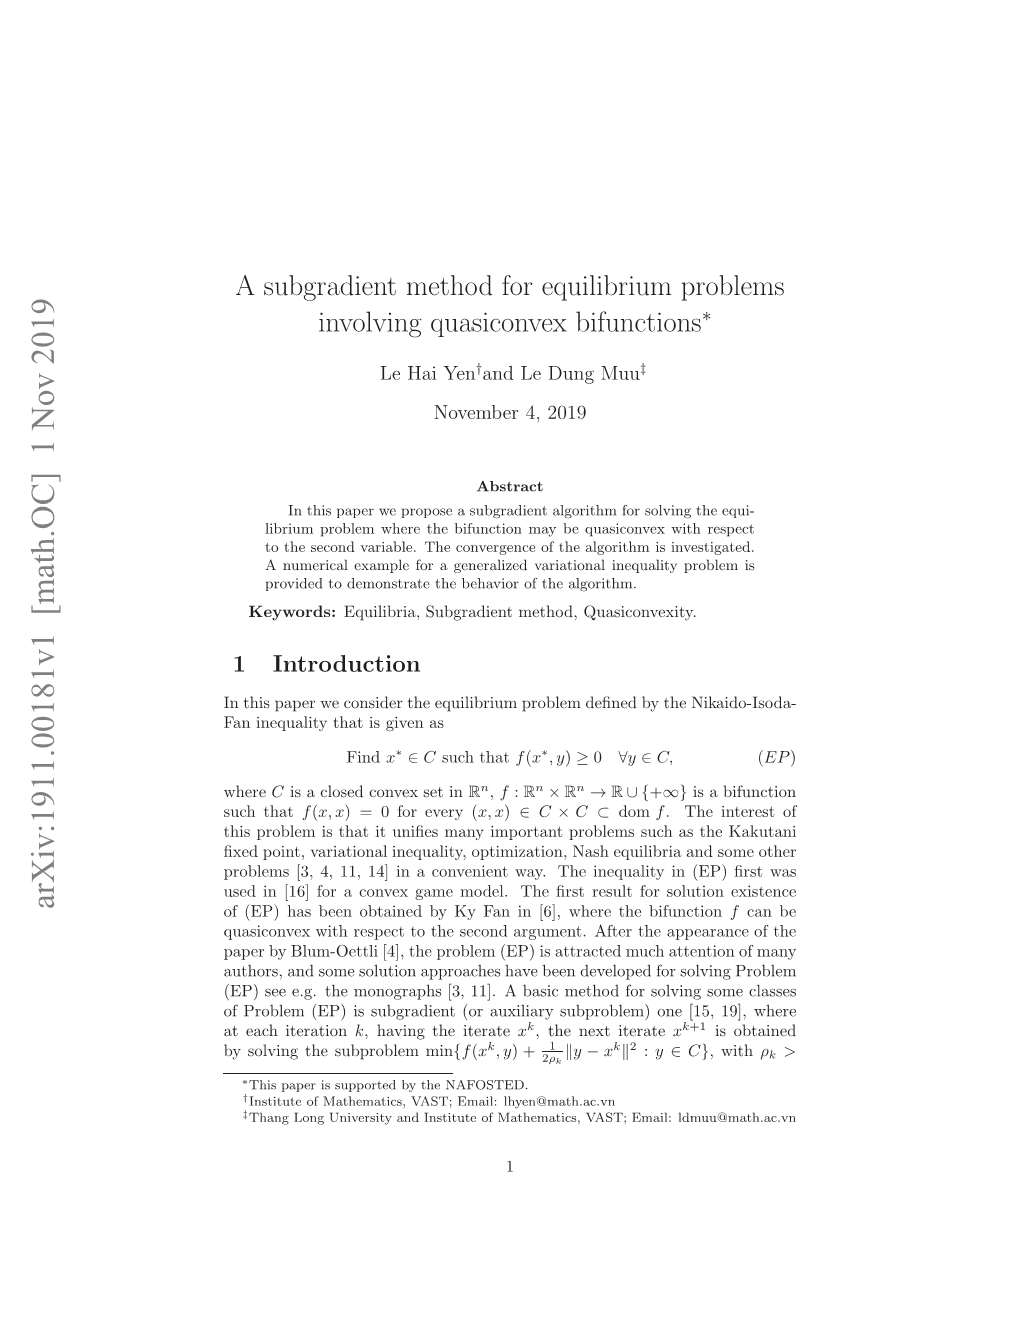 A Subgradient Method for Equilibrium Problems Involving Quasiconvex